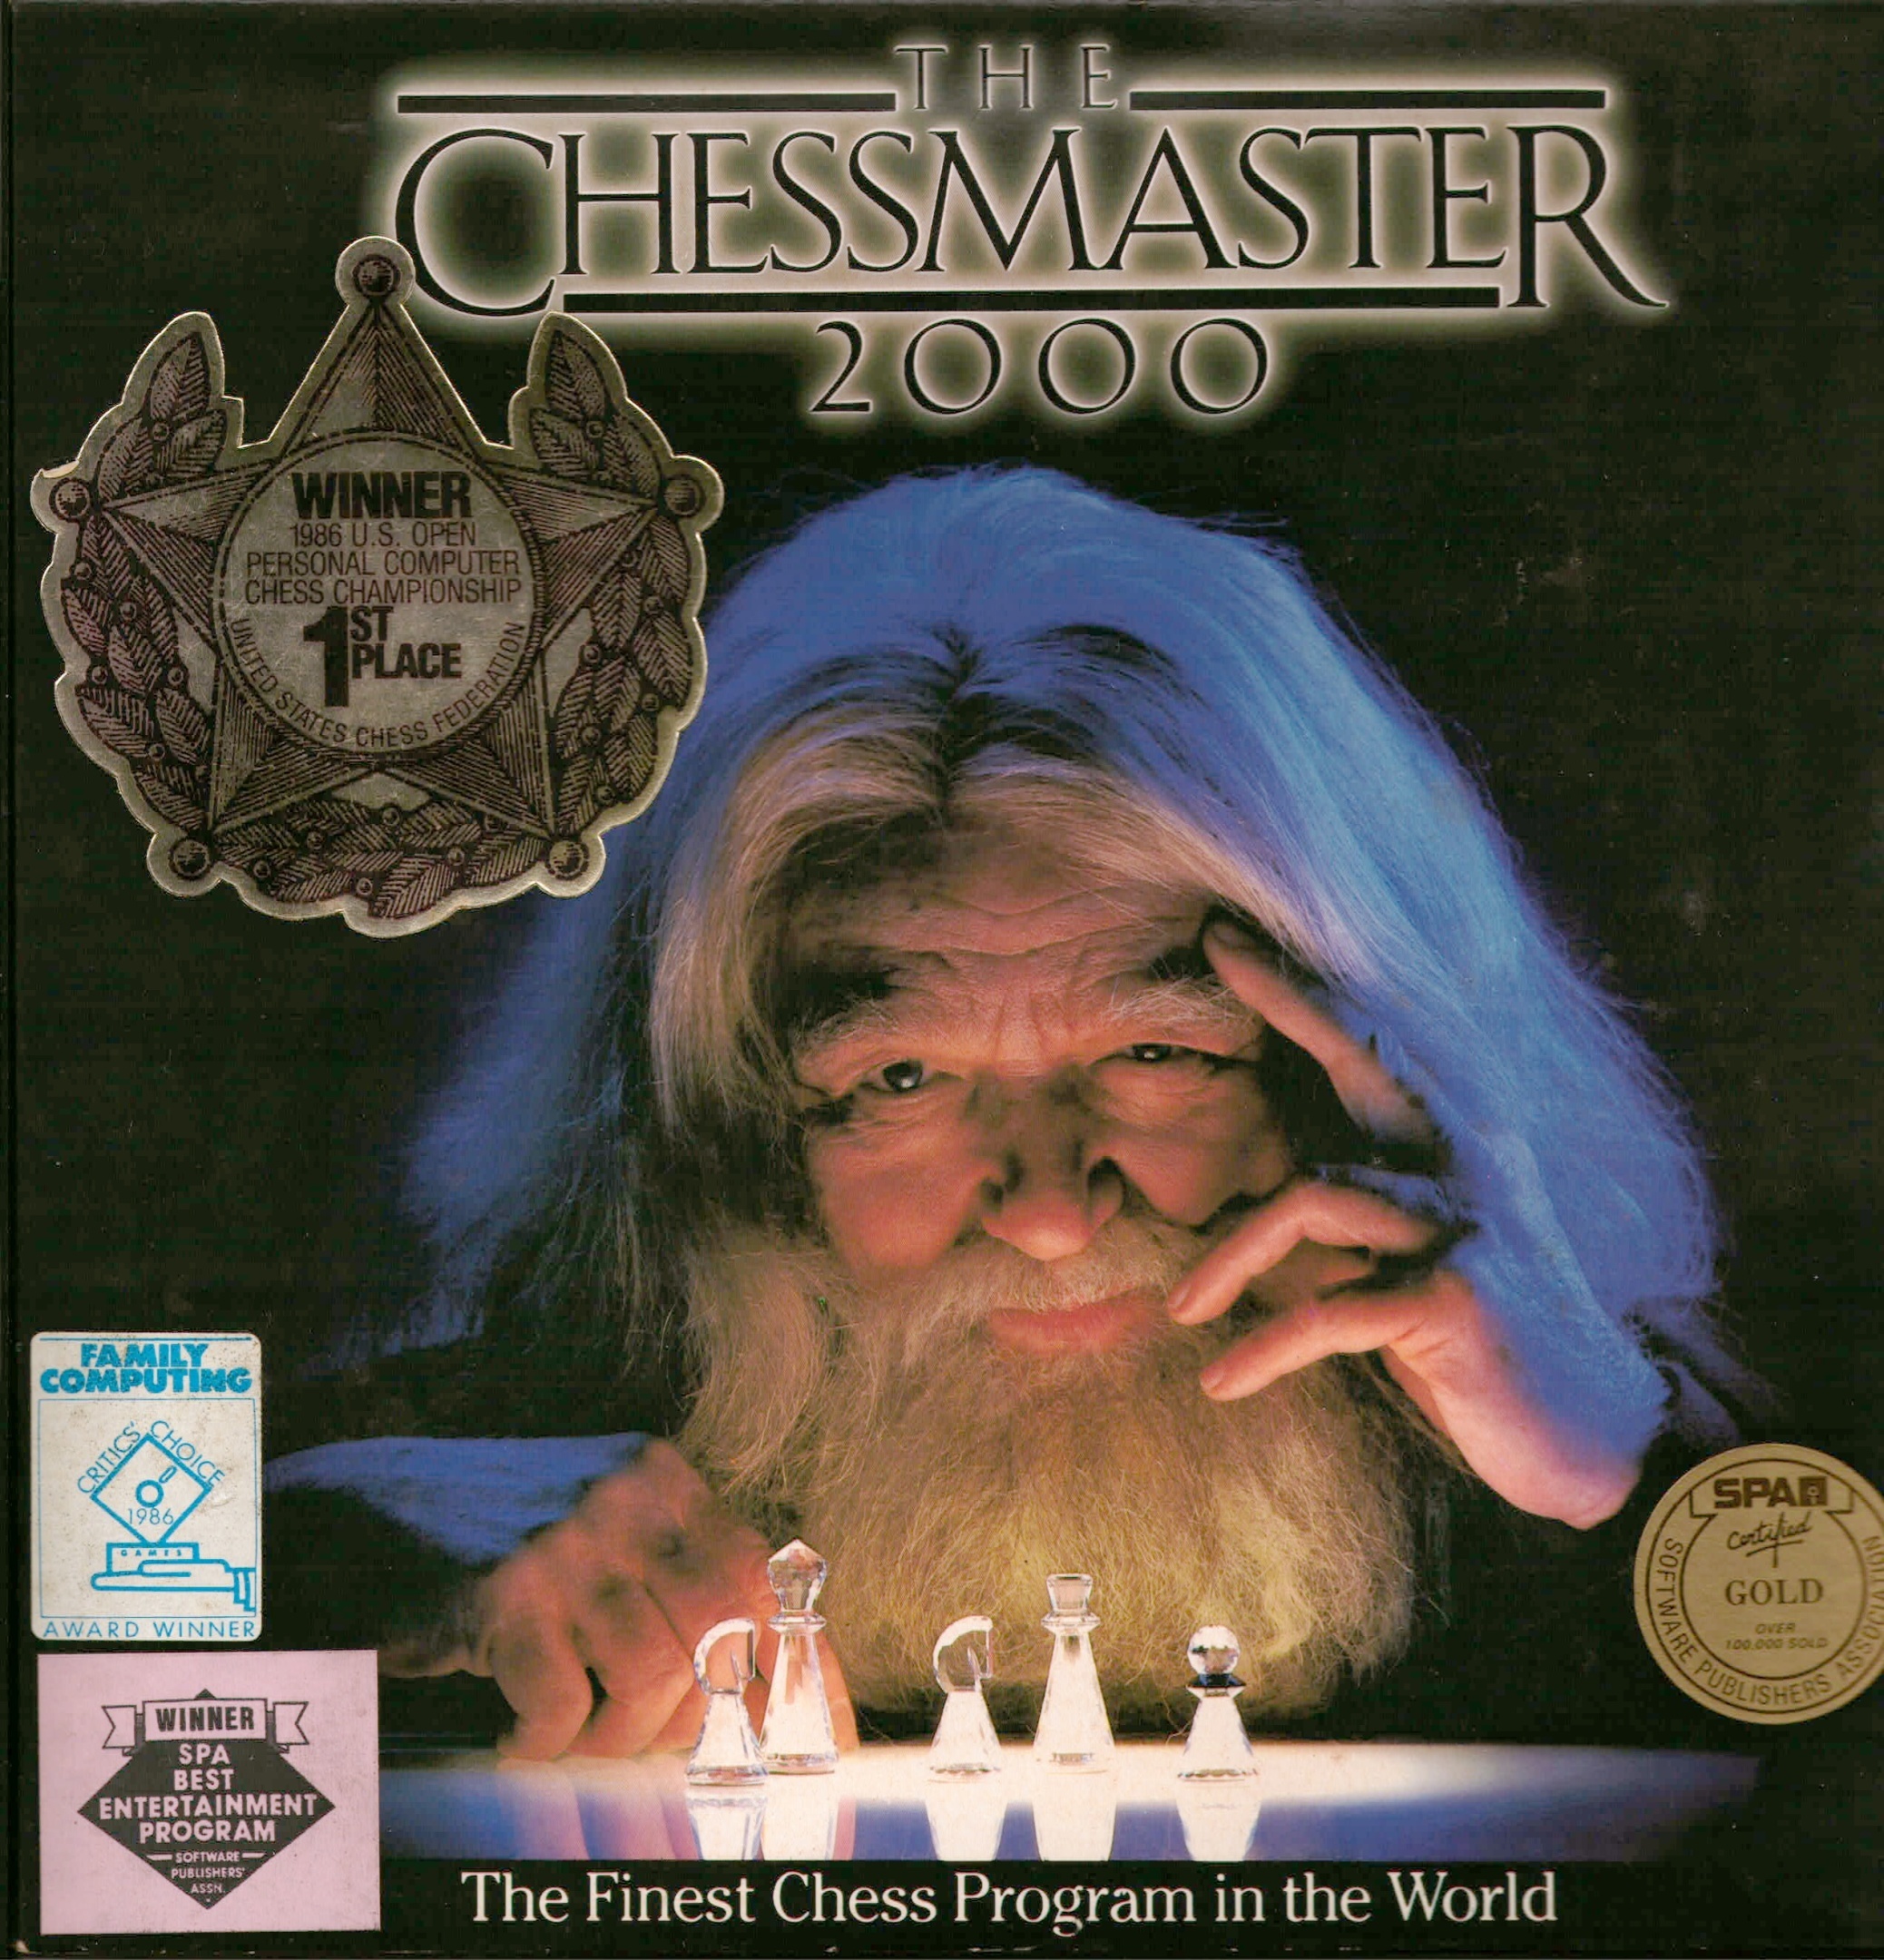 3D Chess - Metacritic